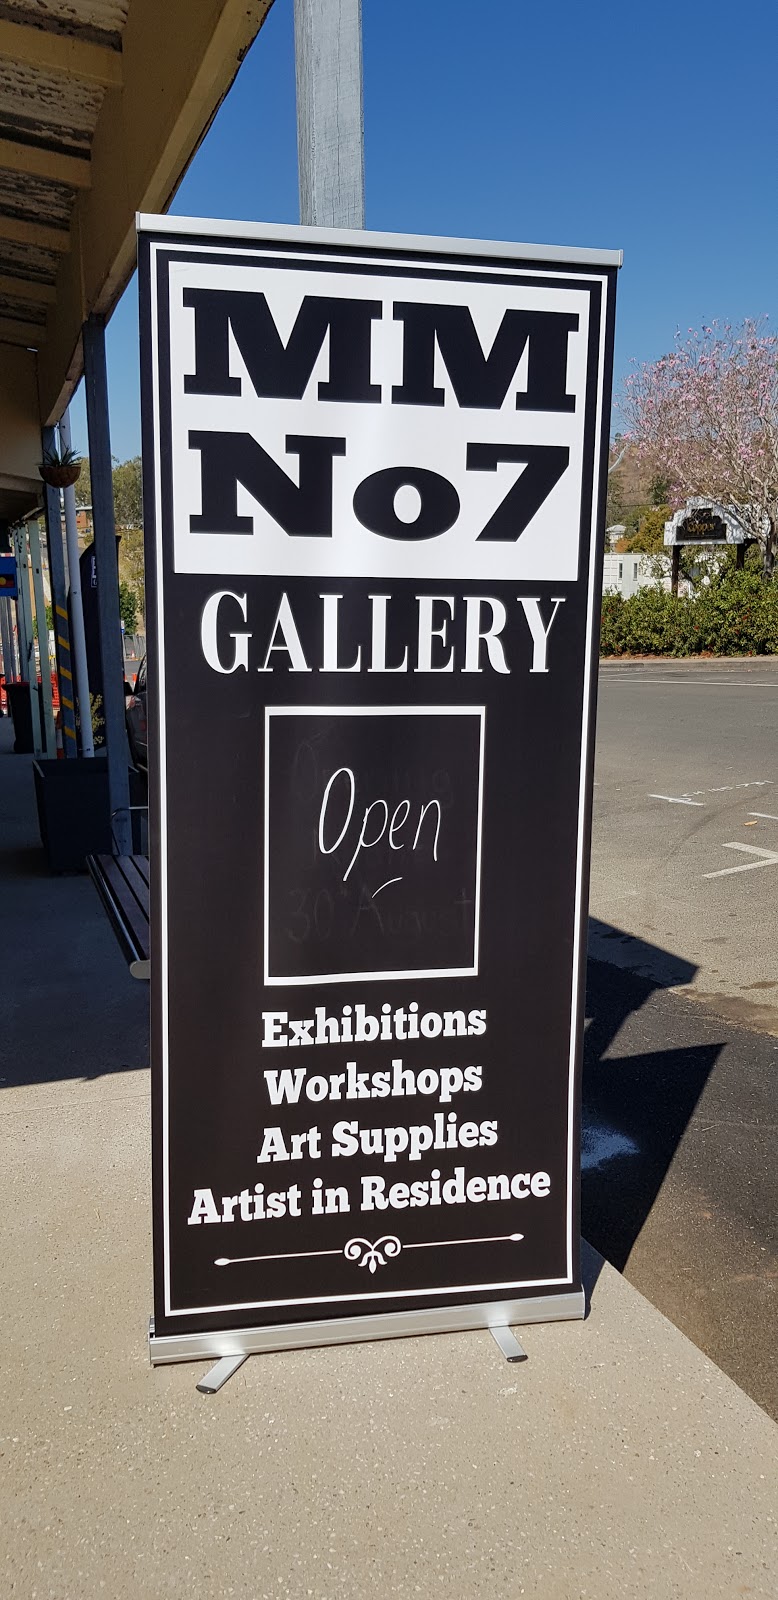 Mount Morgan Gallery No 7 | art gallery | 77 Morgan St, Mount Morgan QLD 4714, Australia | 0411865621 OR +61 411 865 621